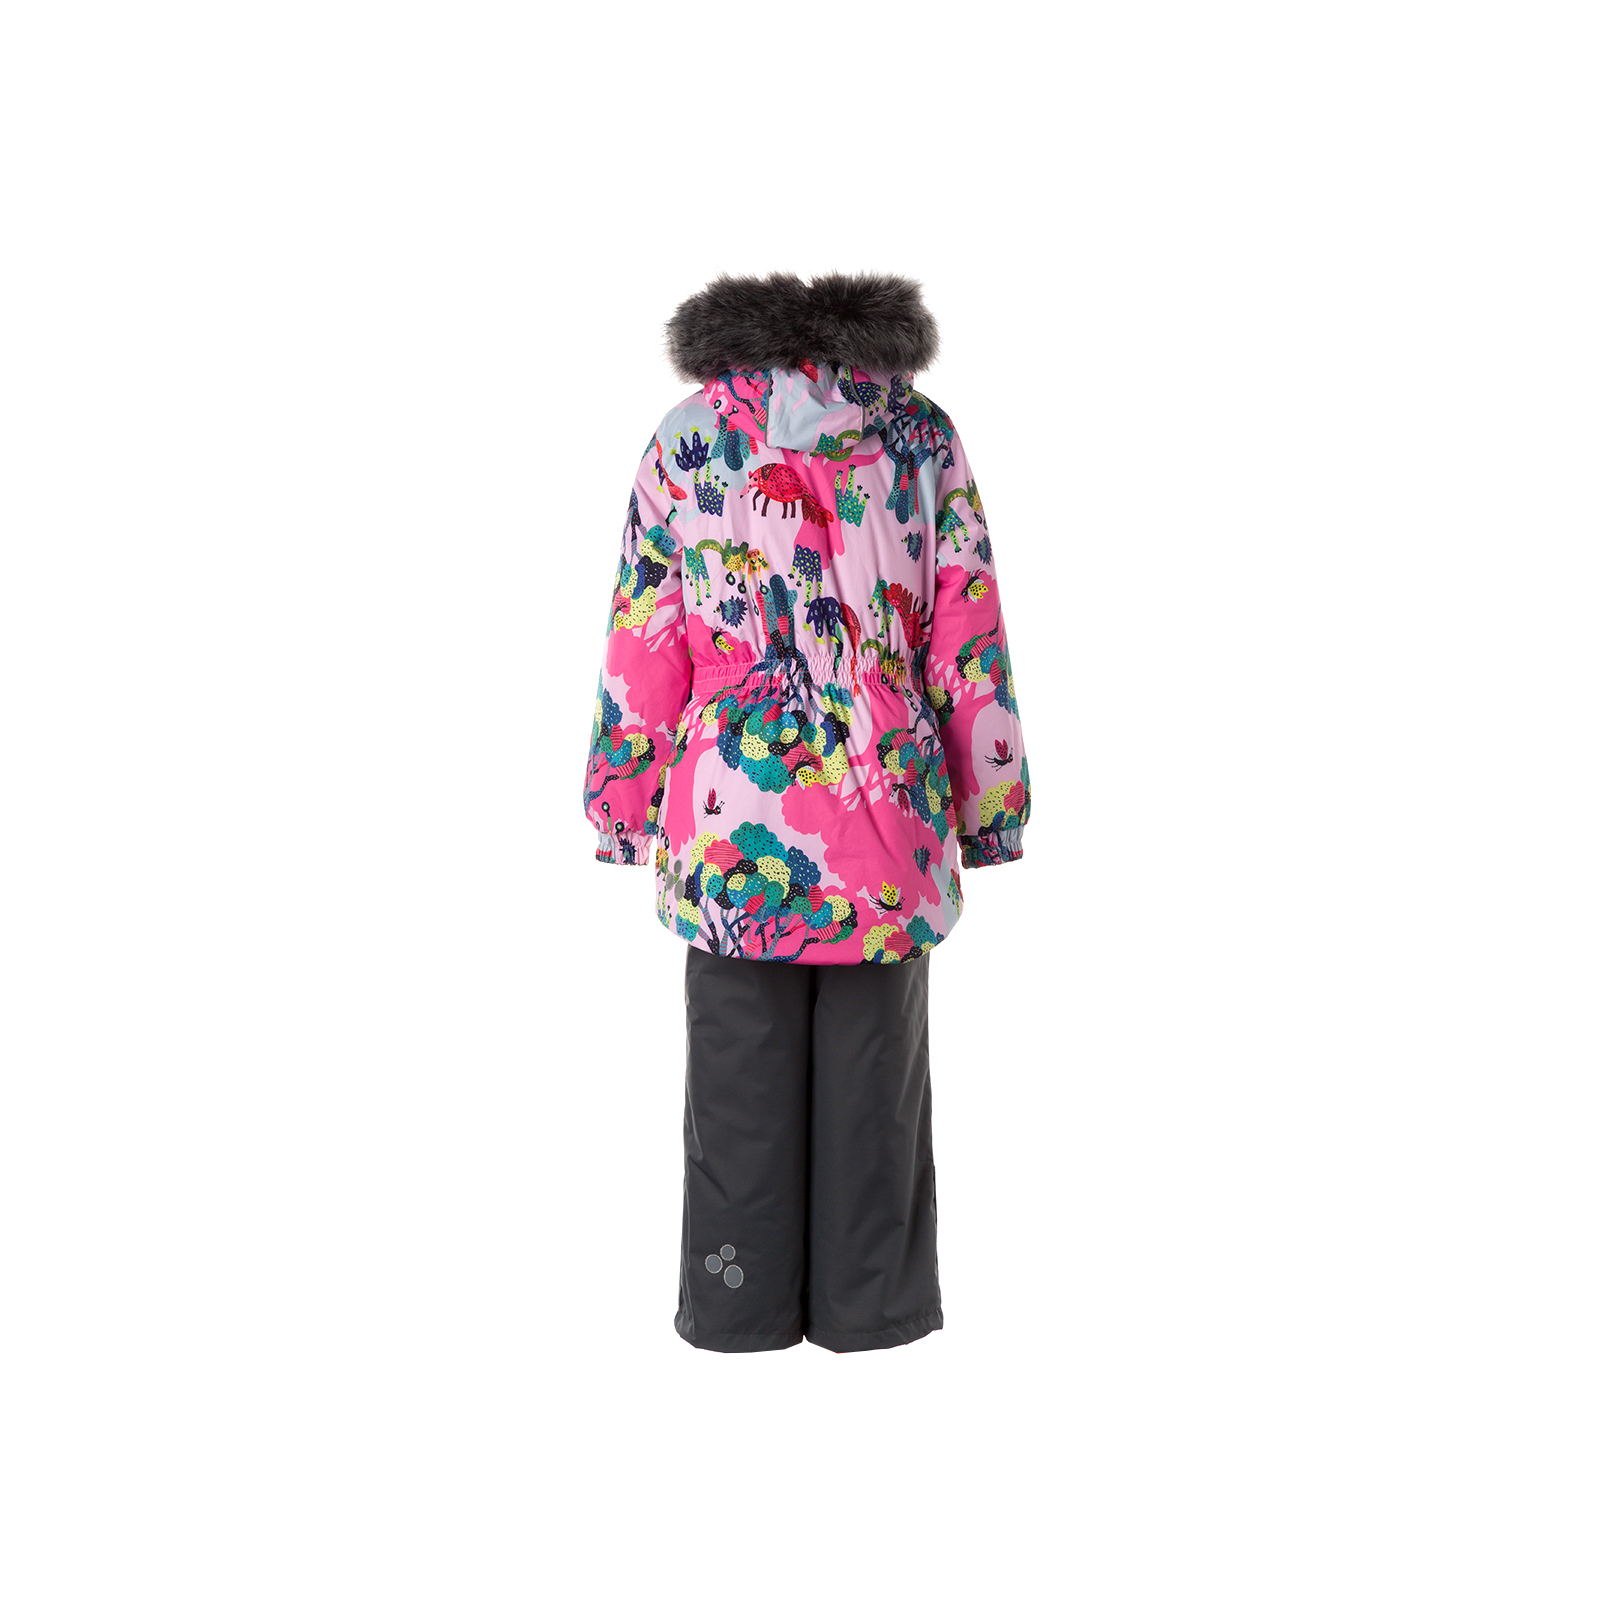 Комплект верхней одежды Huppa RENELY 2 41850230 cветло-розовый с принтом/серый 134 (4741468977799) изображение 2